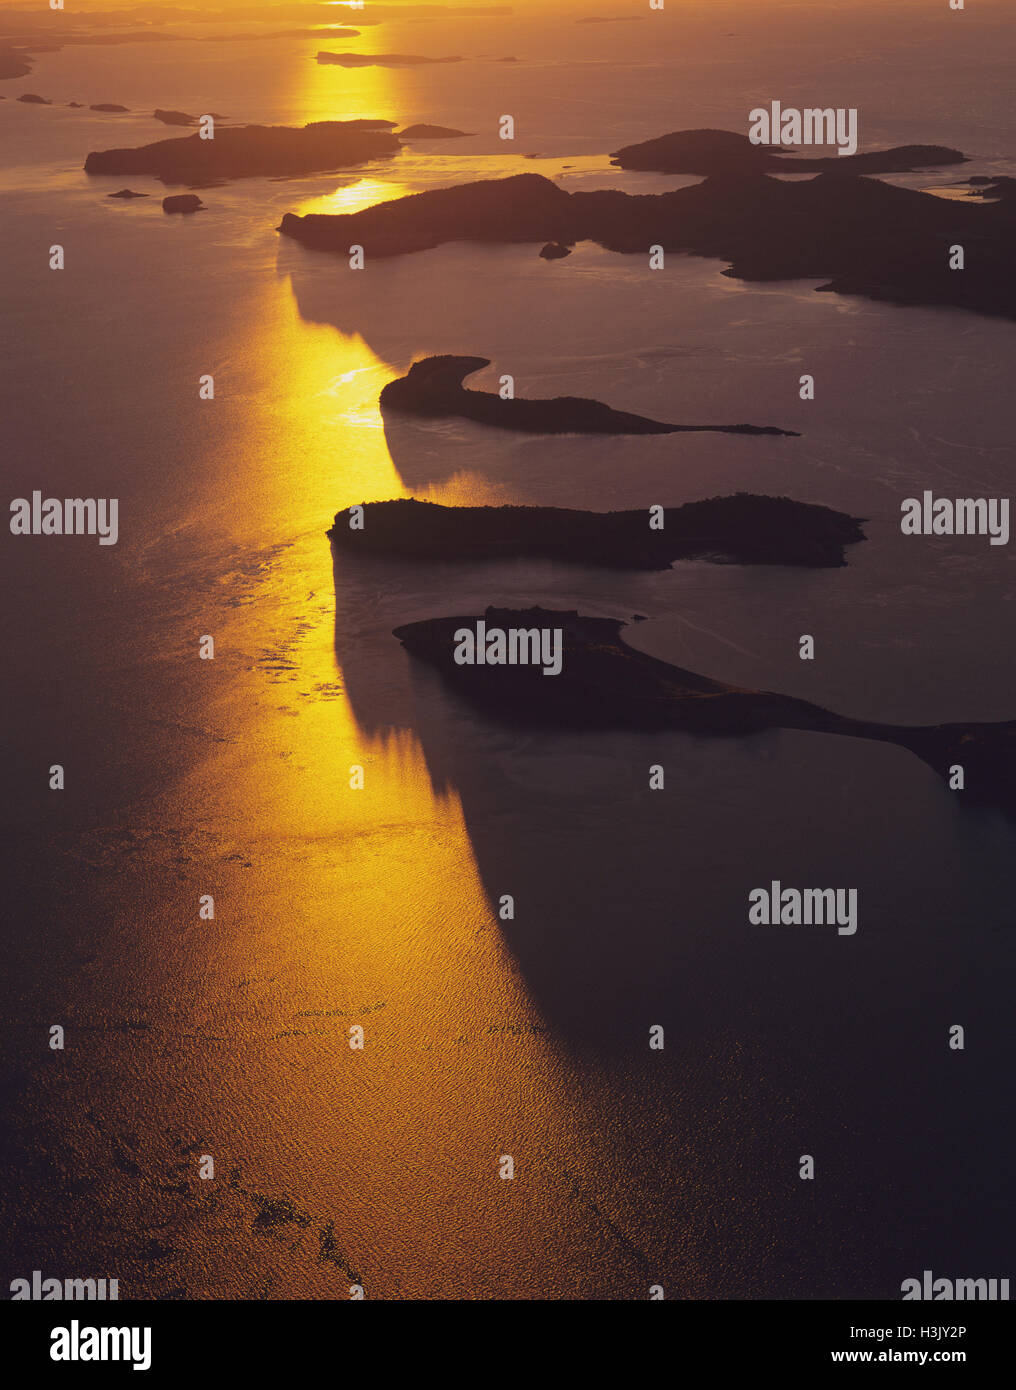 Îles de la baie de Talbot au coucher du soleil, photographie aérienne. Banque D'Images